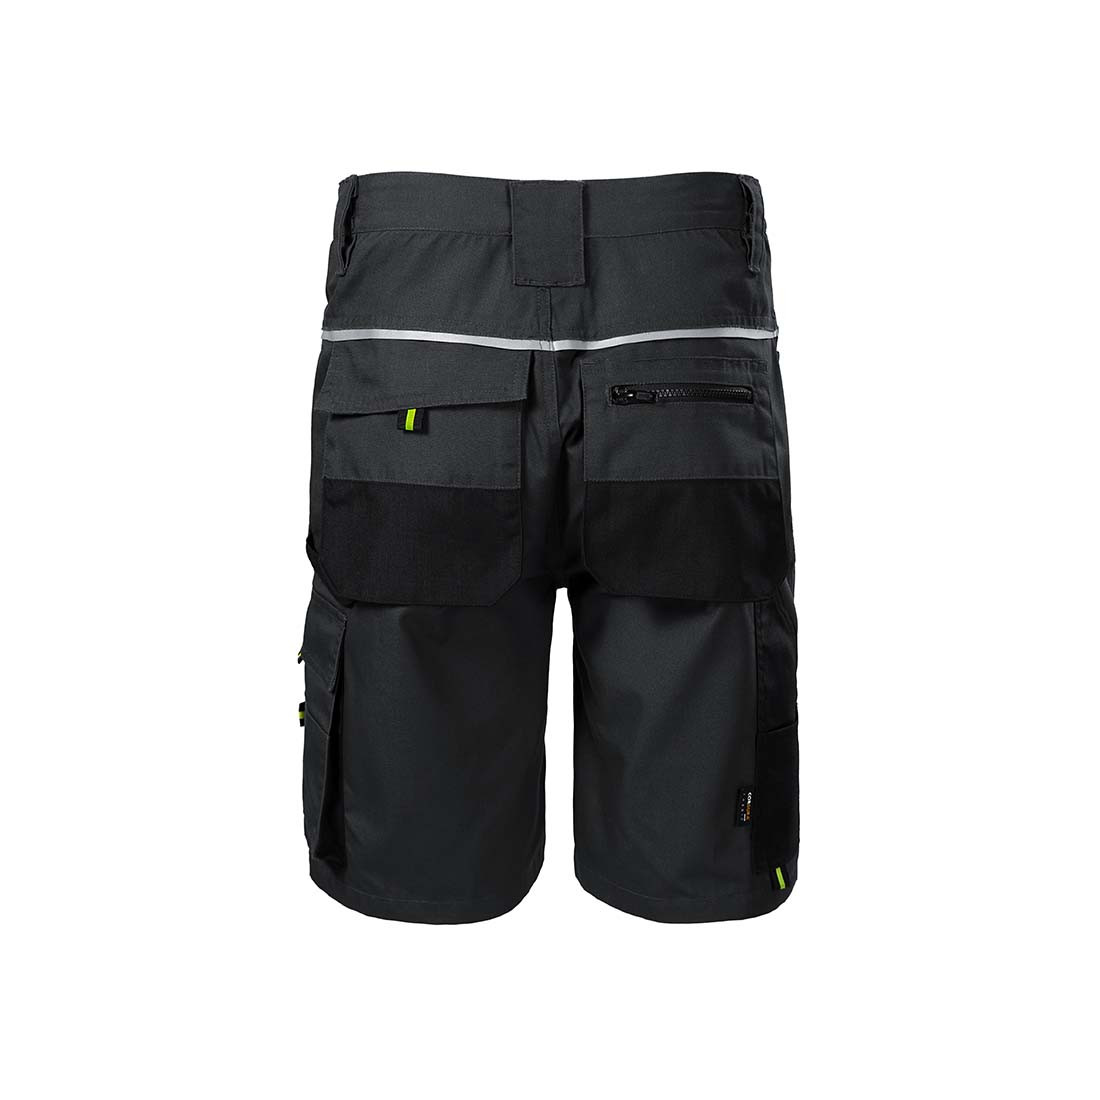 RANGER Men's Work Shorts - Safetywear